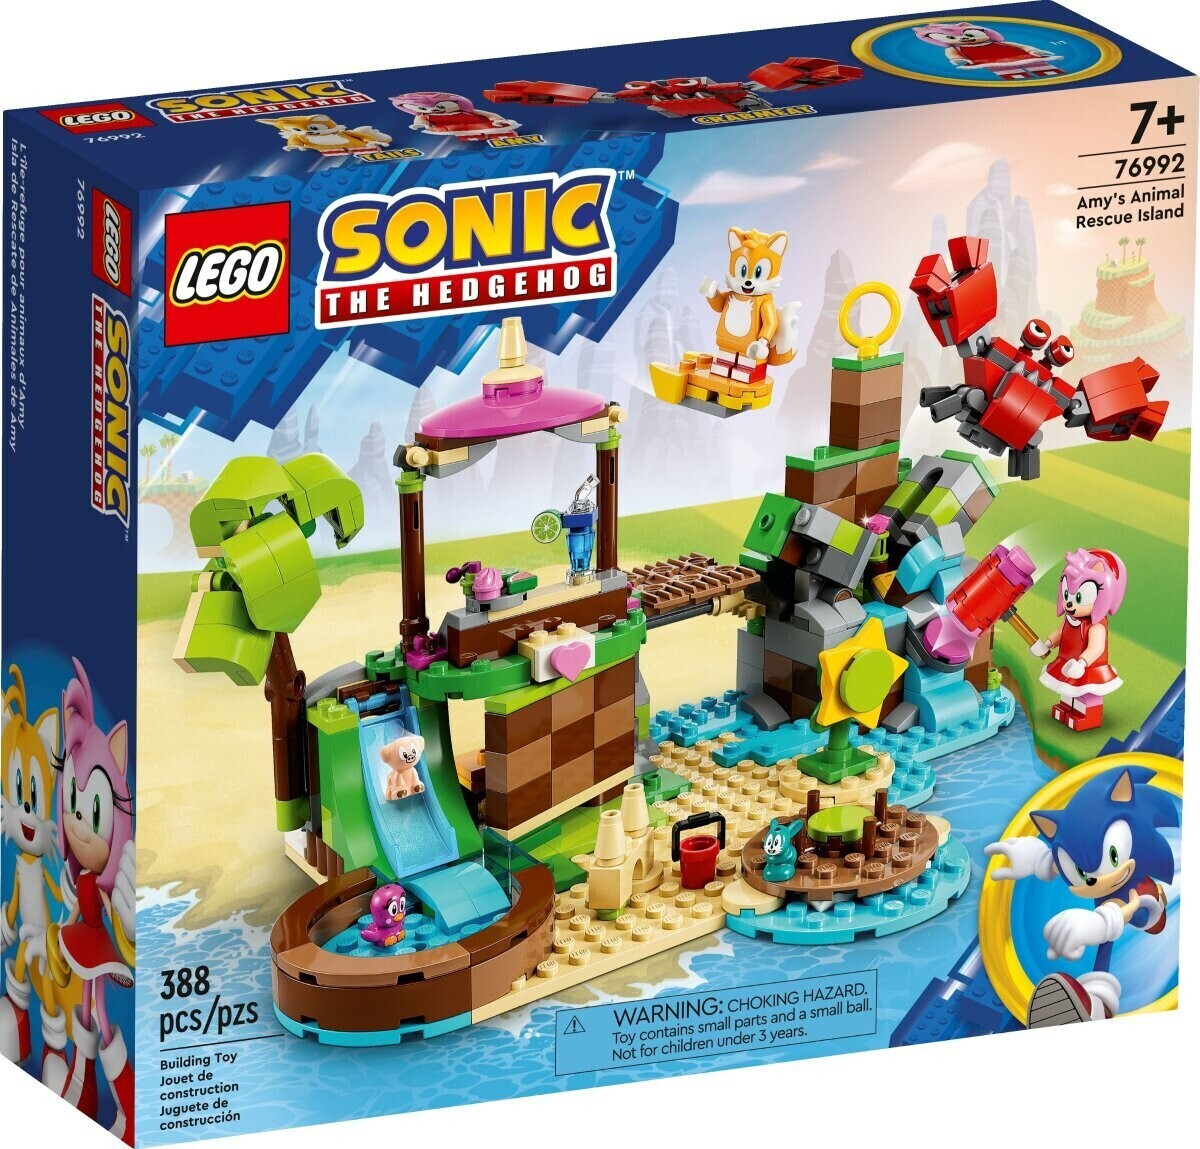 LEGO Sonic the Hedgehog - L'isola del soccorso animale di Amy (76992) a €  39,38 (oggi)